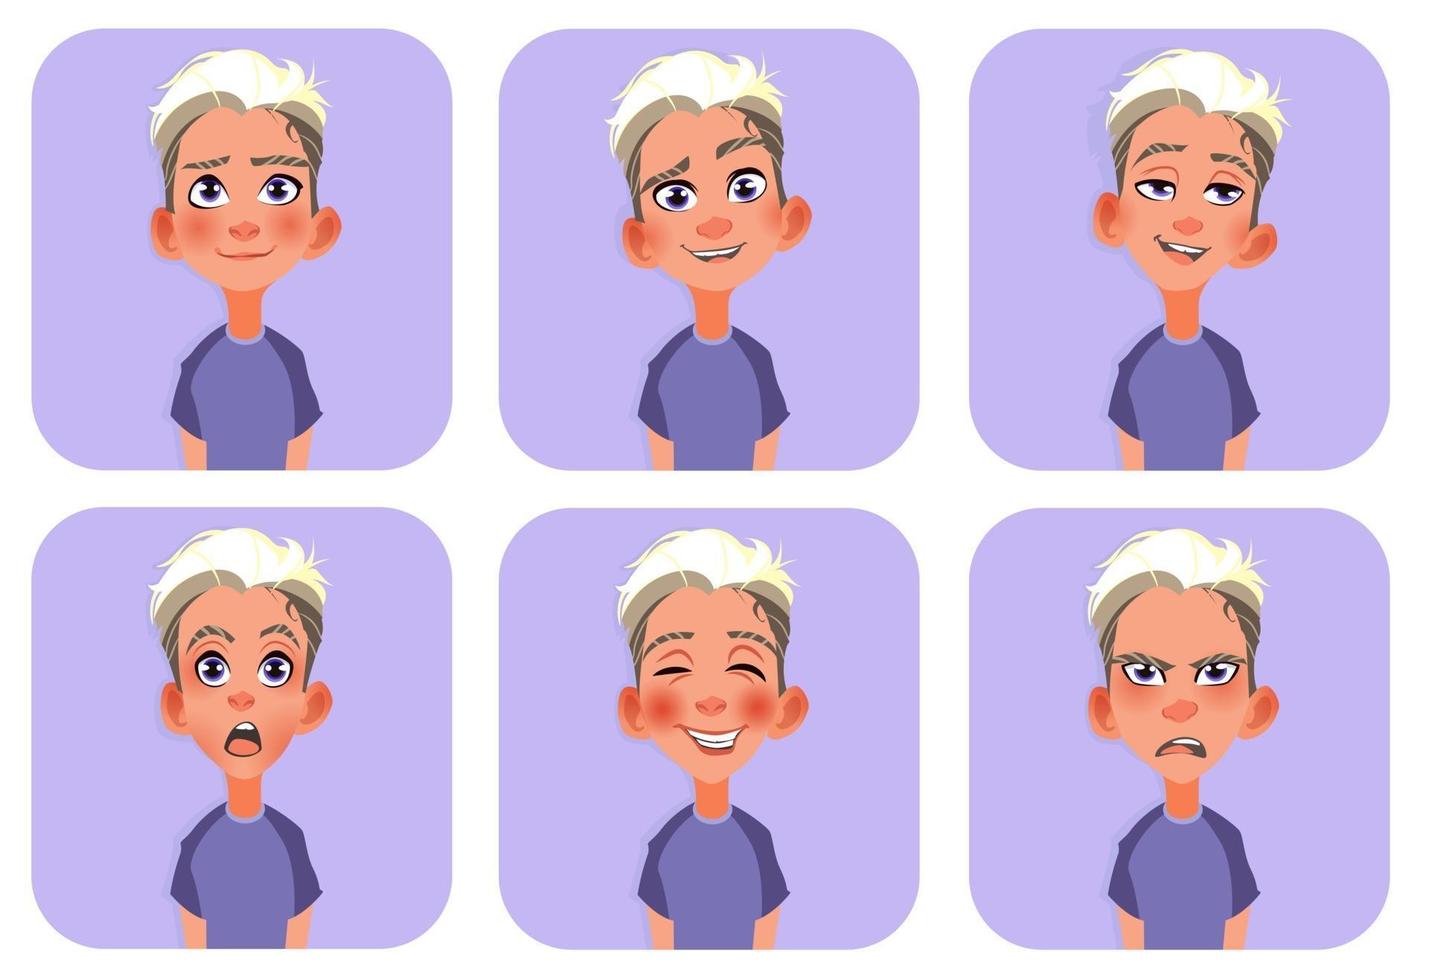 grote reeks jongen emoticons man avatars met verschillende emoties vector